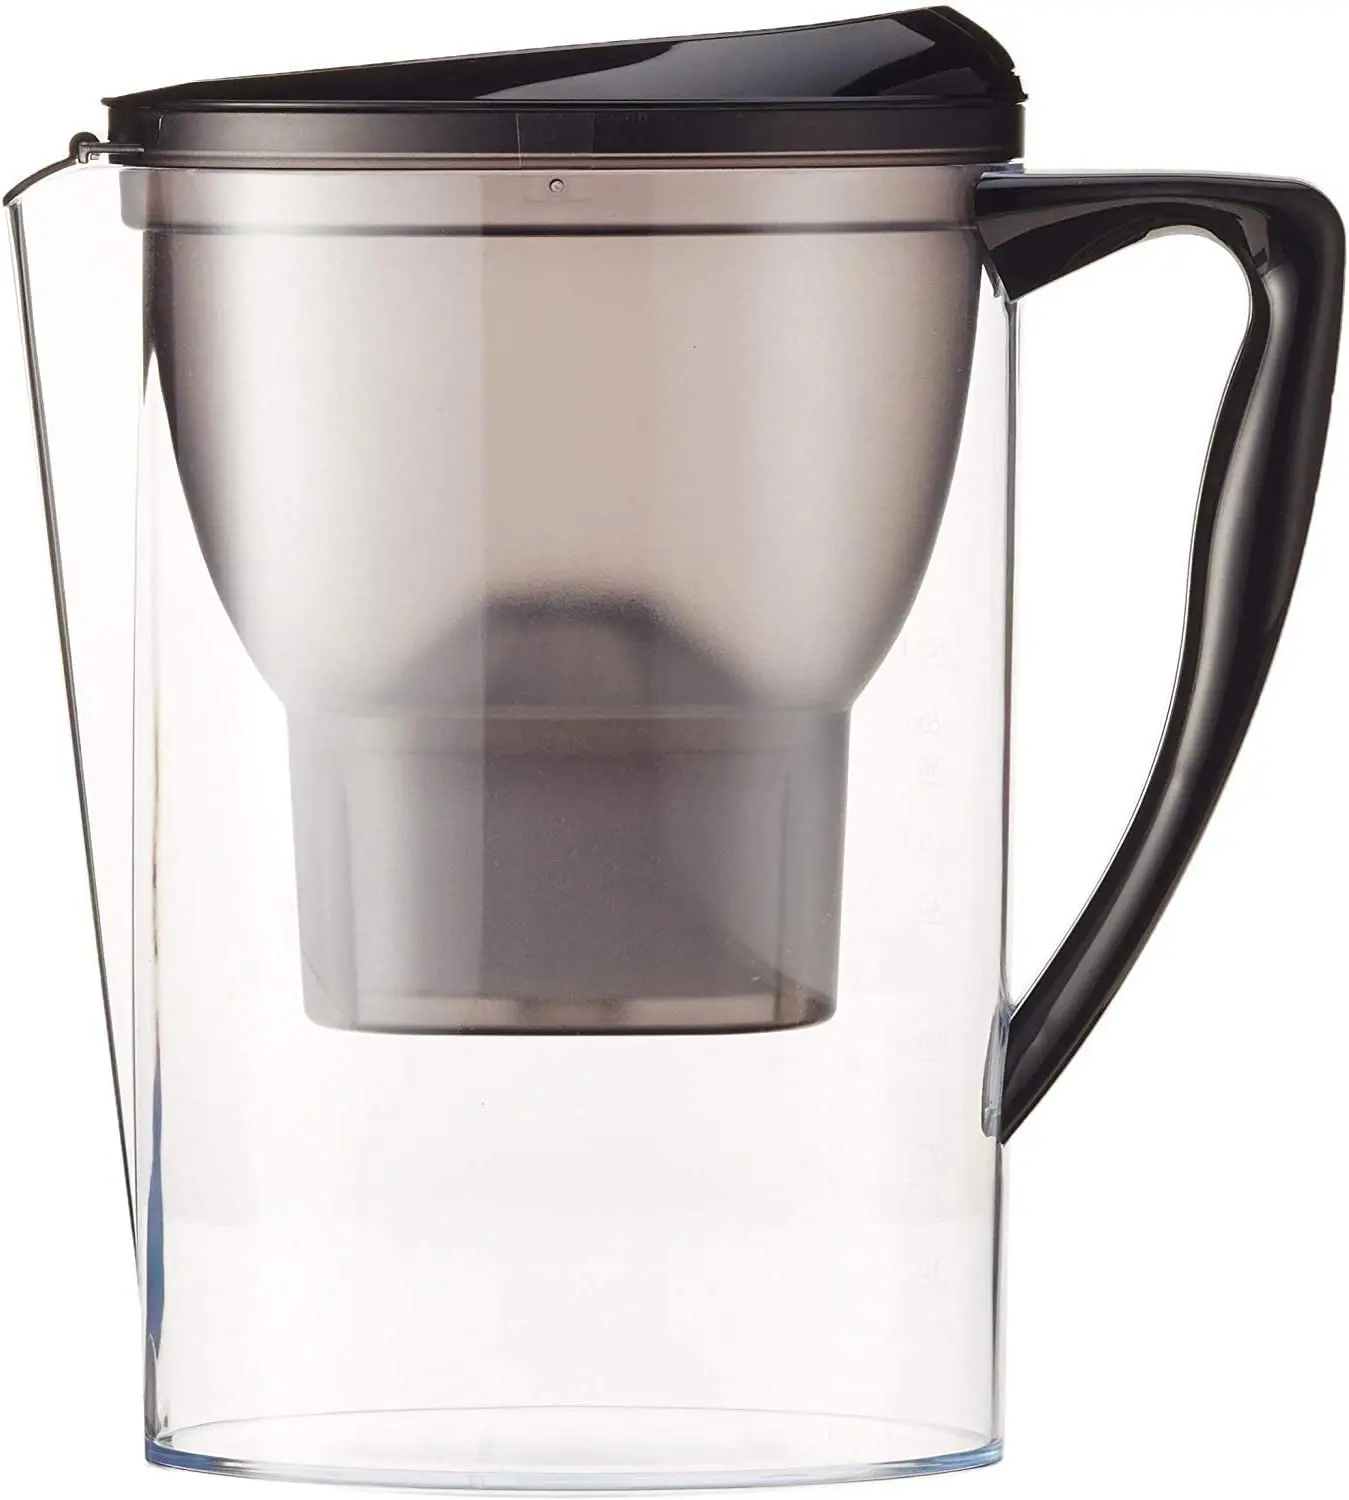 Probamos lo último (y mejor) en jarras filtrantes de agua para el hogar, Comparativas